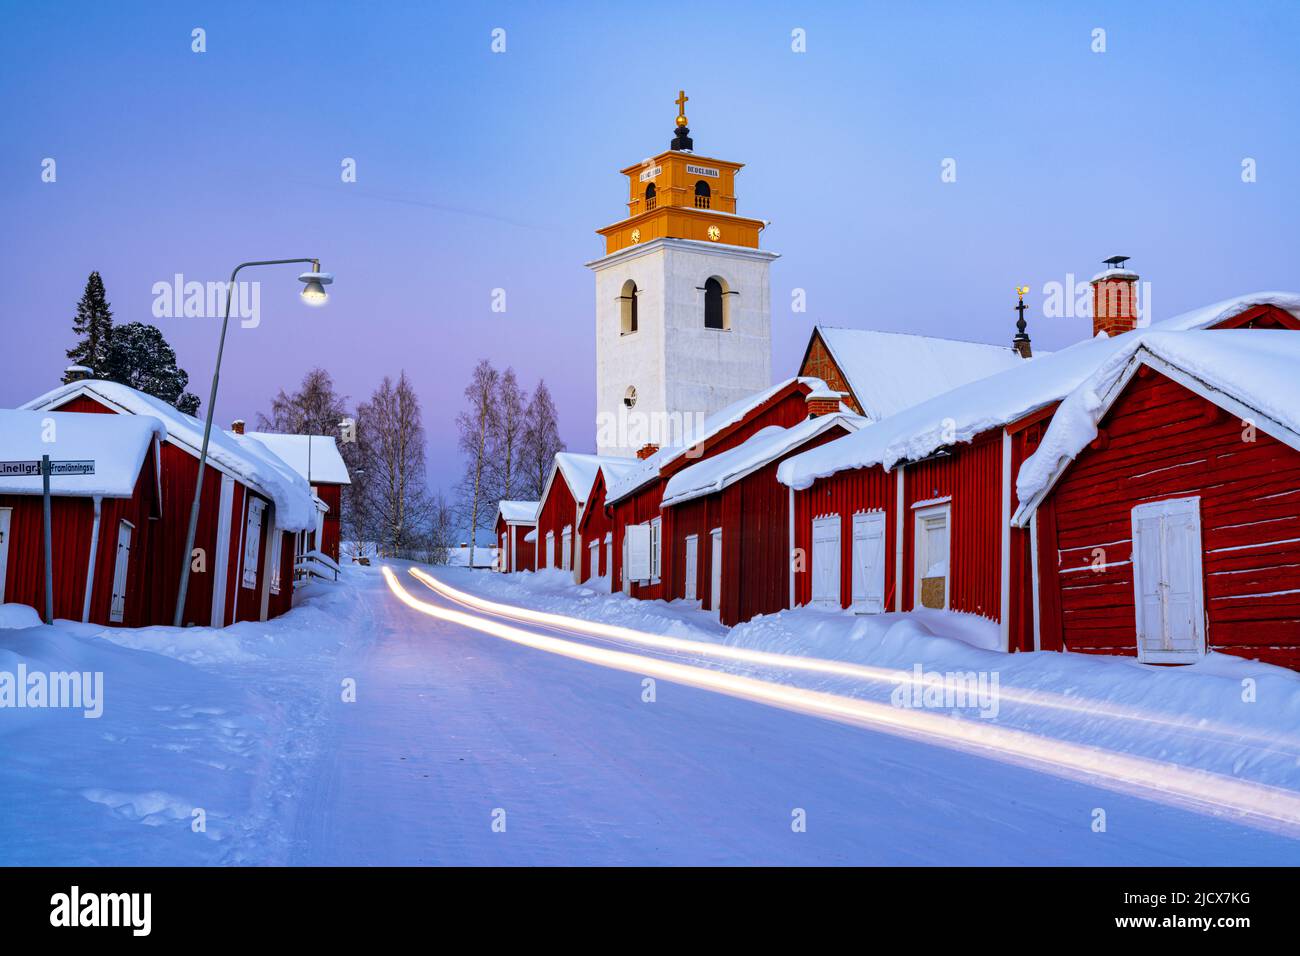 Les sentiers de voiture s'allument sur la route glacée traversant la ville médiévale de l'église Gammelstad couverte de neige, site classé au patrimoine mondial de l'UNESCO, Lulea, Suède Banque D'Images